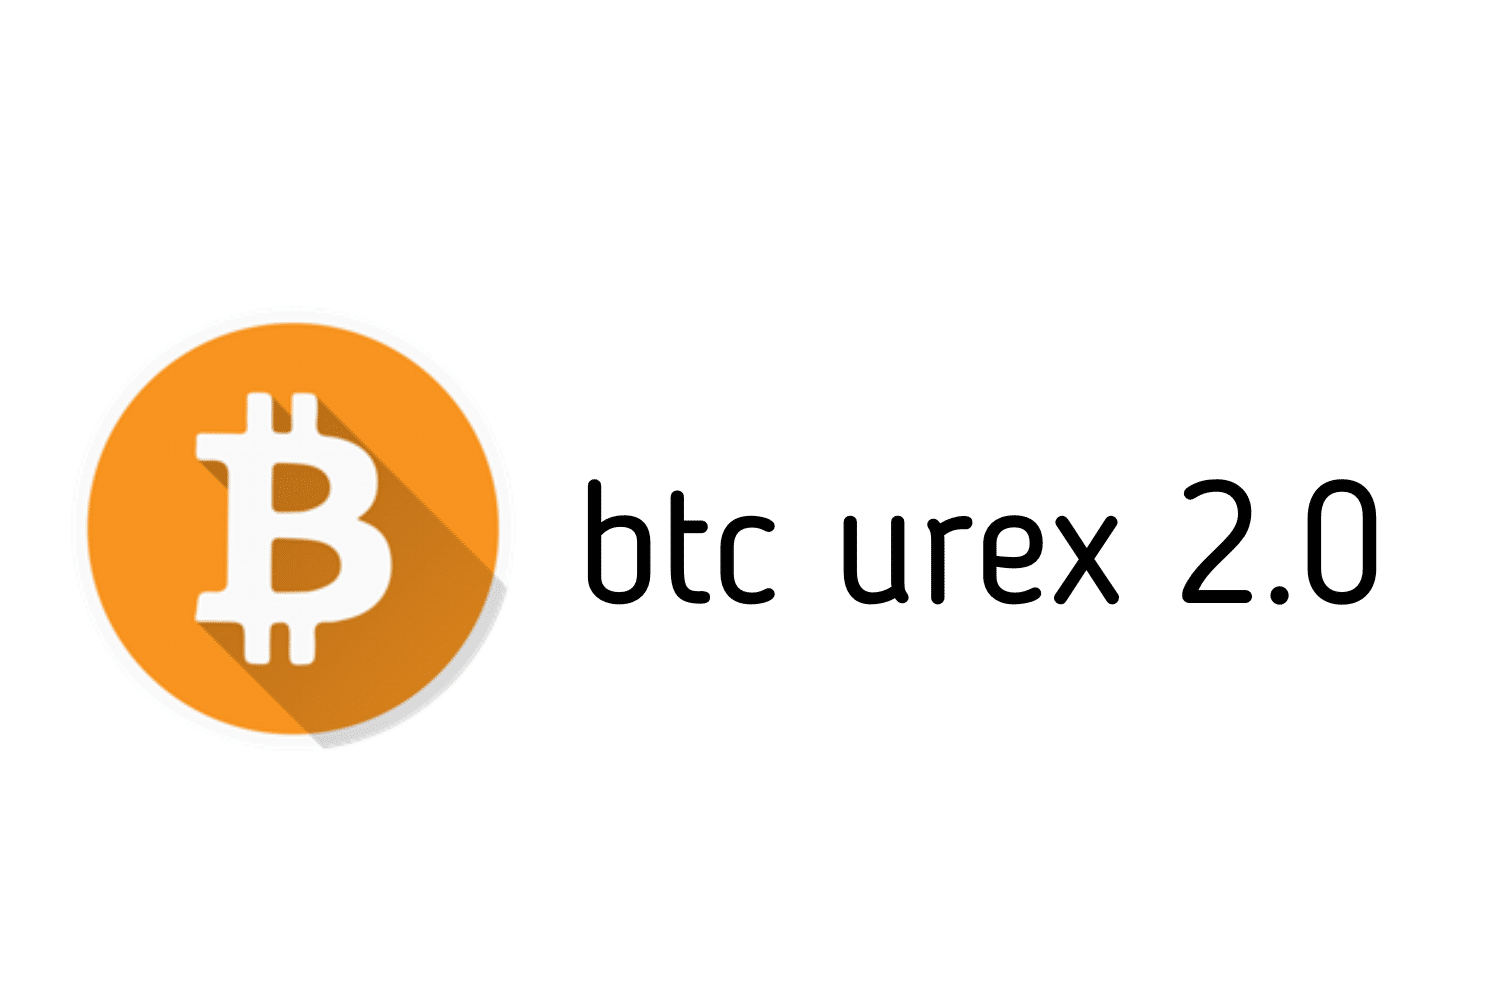 Inscrição Urex Bit 2.0